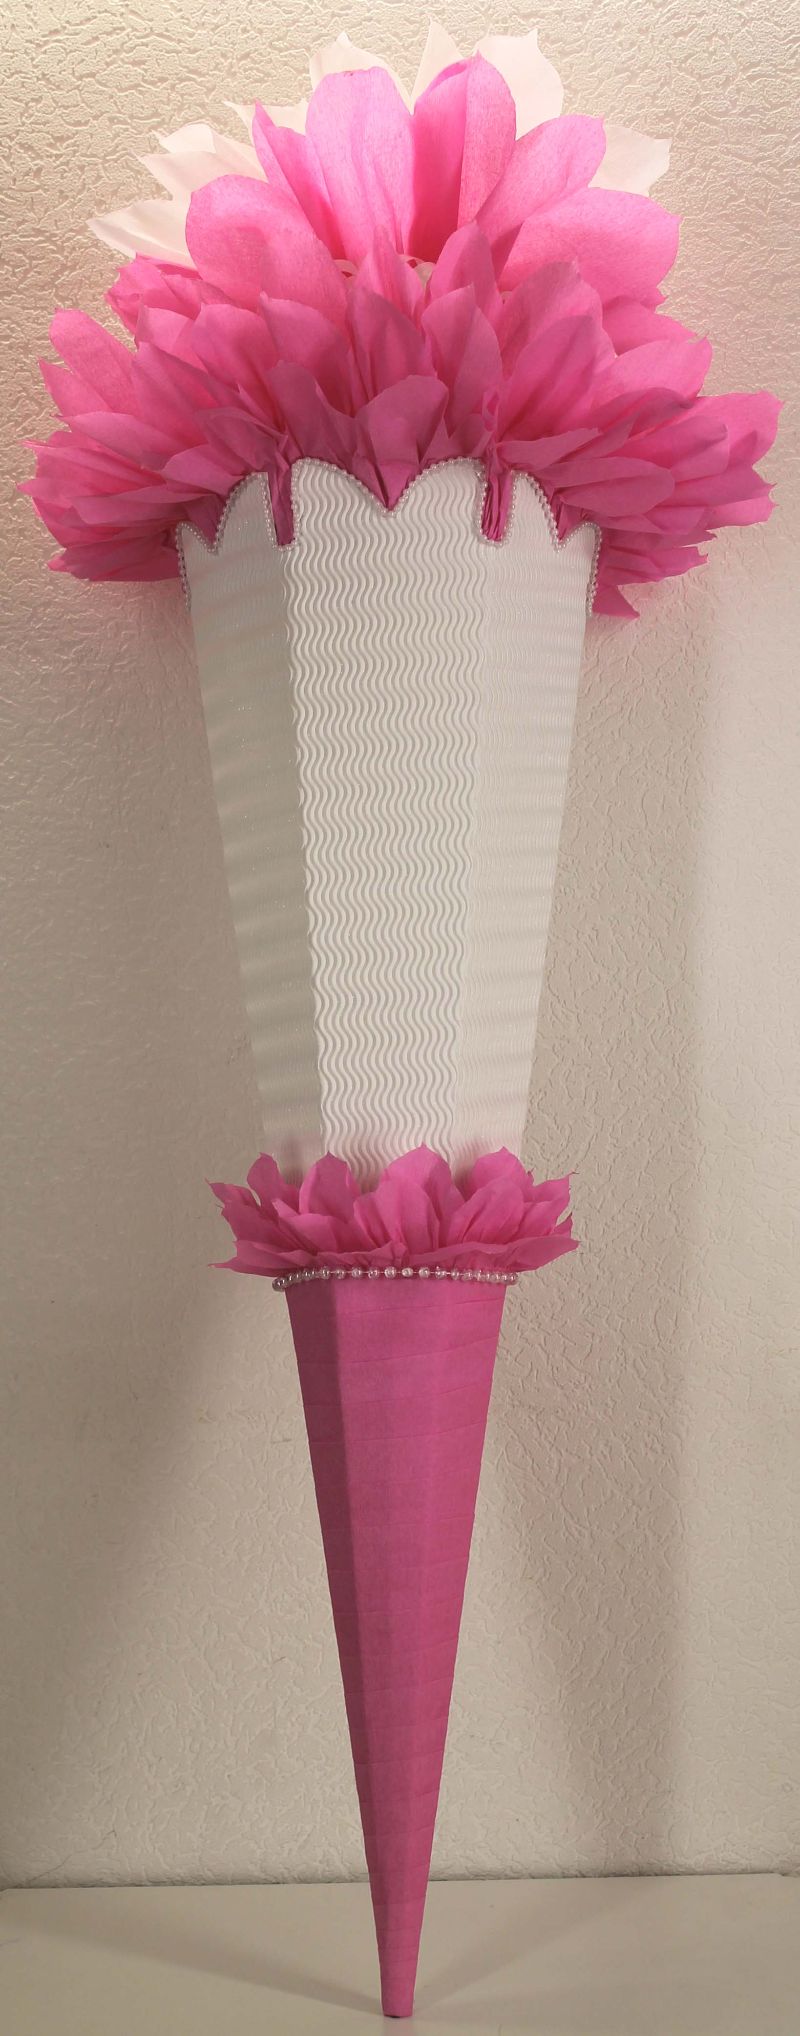  - Schultüte Zuckertüte Rohling zum selbst verzieren Rohling 70 75 80 85 90 100 cm / 1m für Mädchen HANDARBEIT rosa weiß